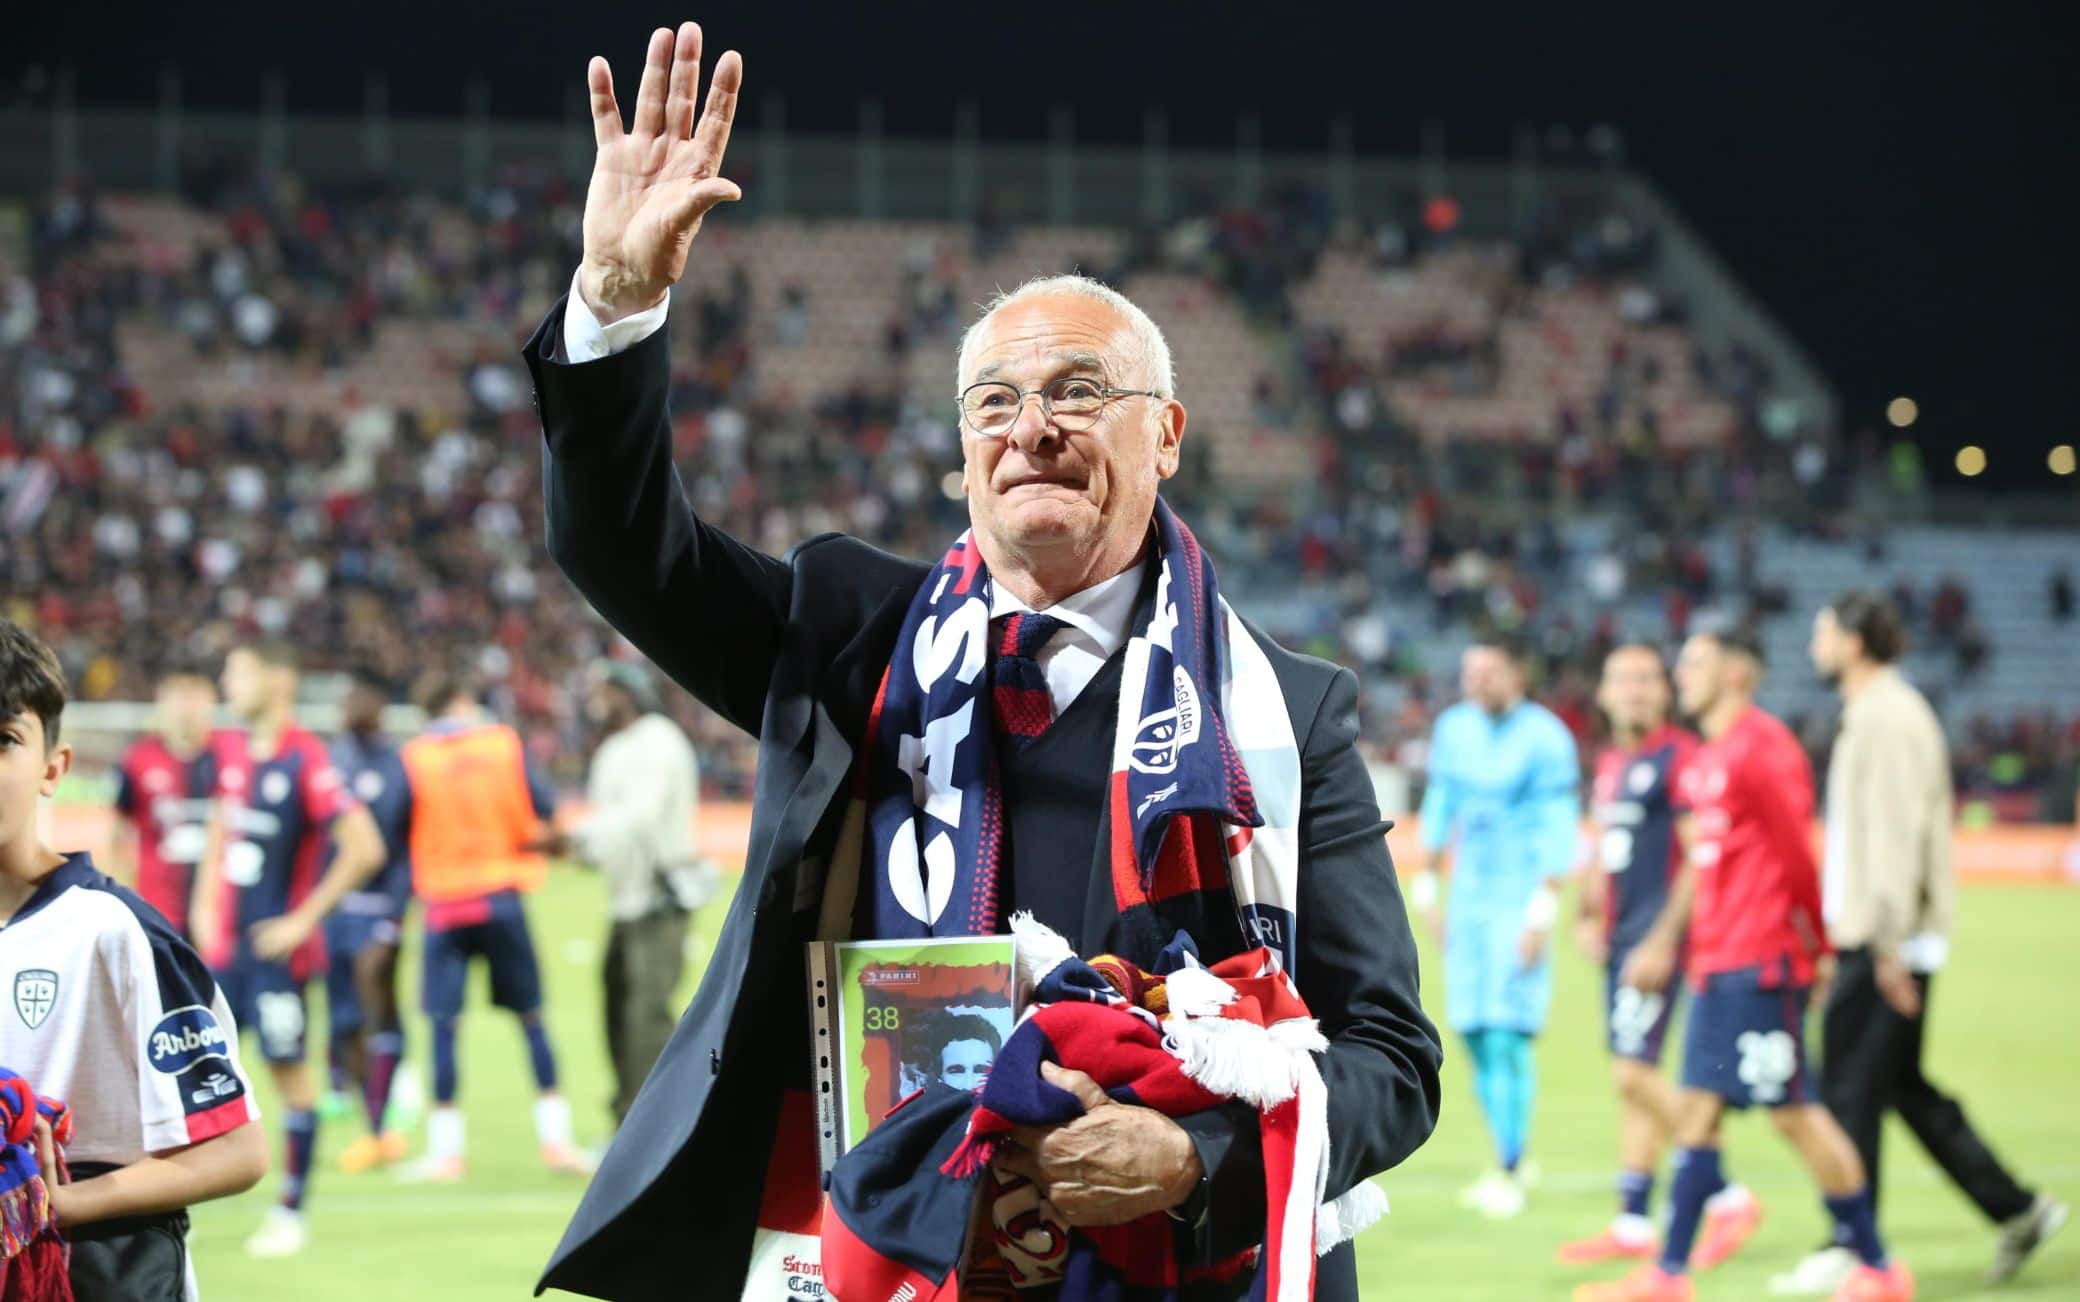 Intanto in campo è comunque festa Cagliari: ovazione e ultimo saluto per Claudio Ranieri: "Quello che siamo riusciti a fare, lo abbiamo fatto insieme" - dice lui nel discorso al centro del campo. 